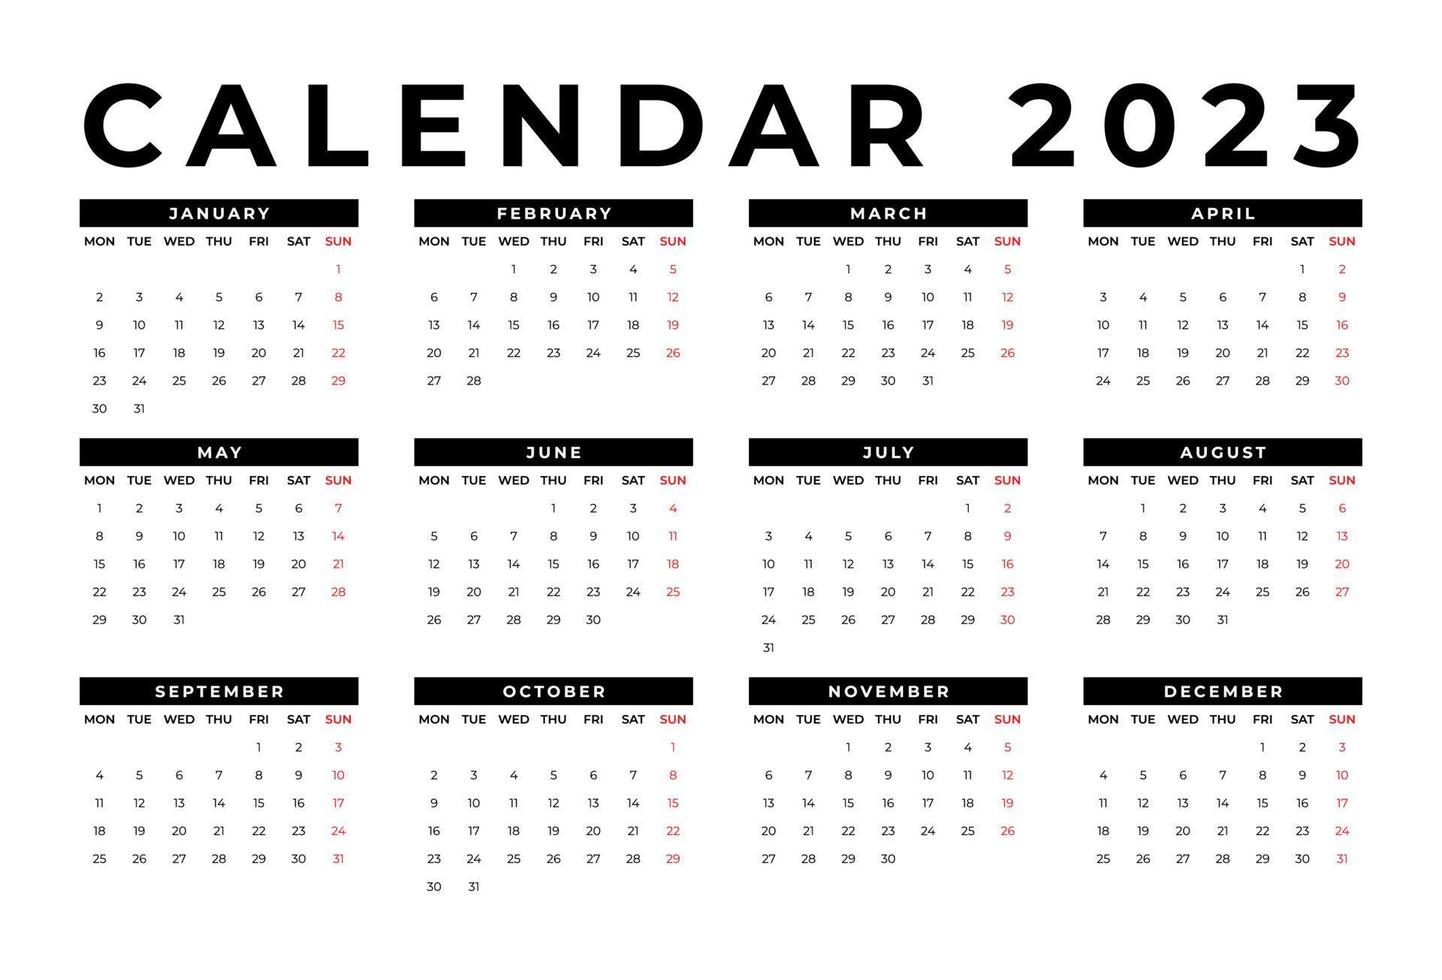 modelo de calendário de mesa mensal para o ano de 2023. semana começa na segunda vetor